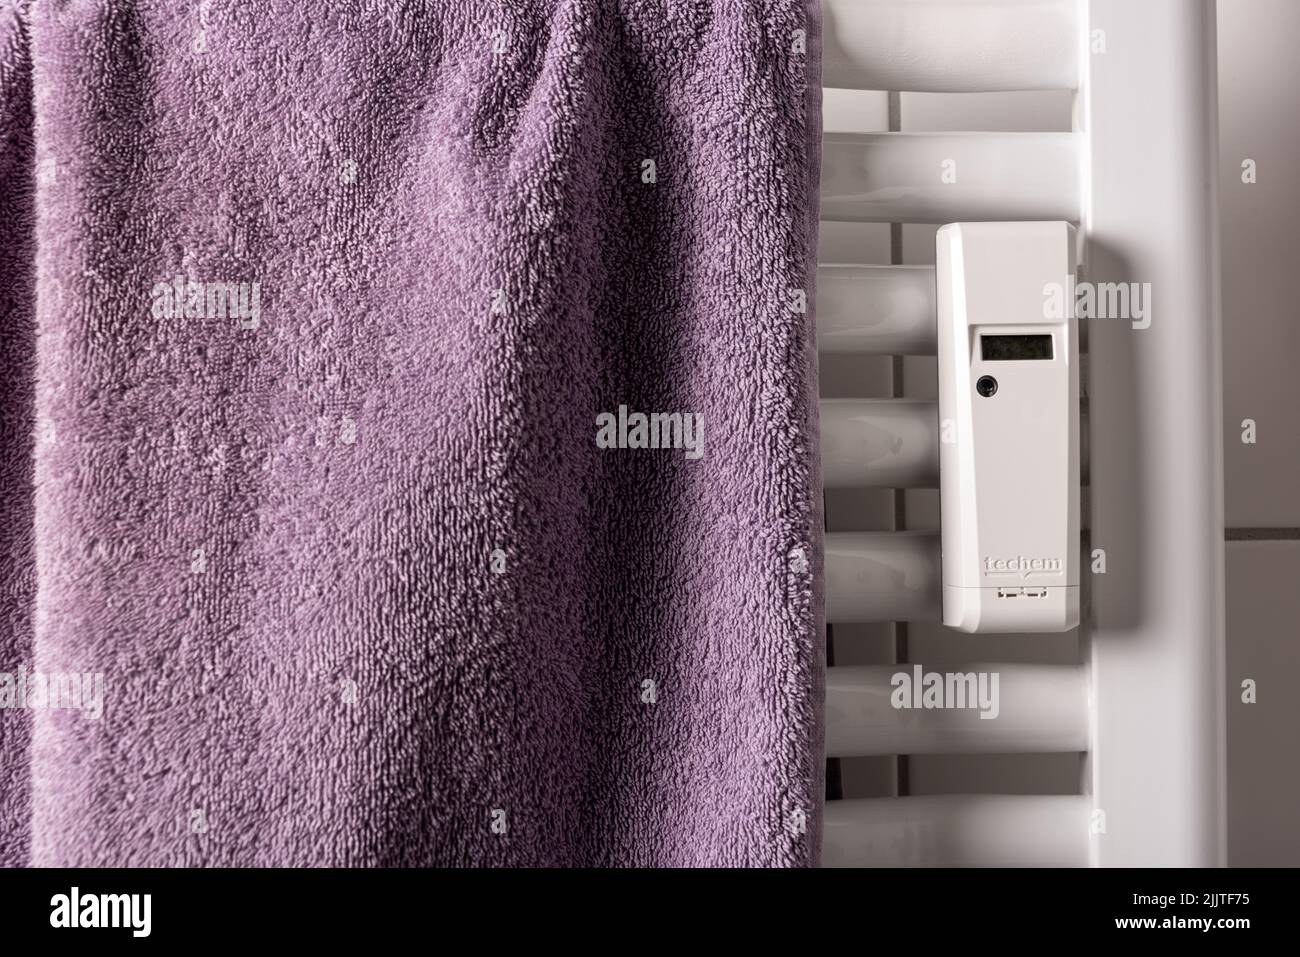 Ablesegerät für den Energieverbrauch am Heizkörper in inem Badezimmer Stock Photo